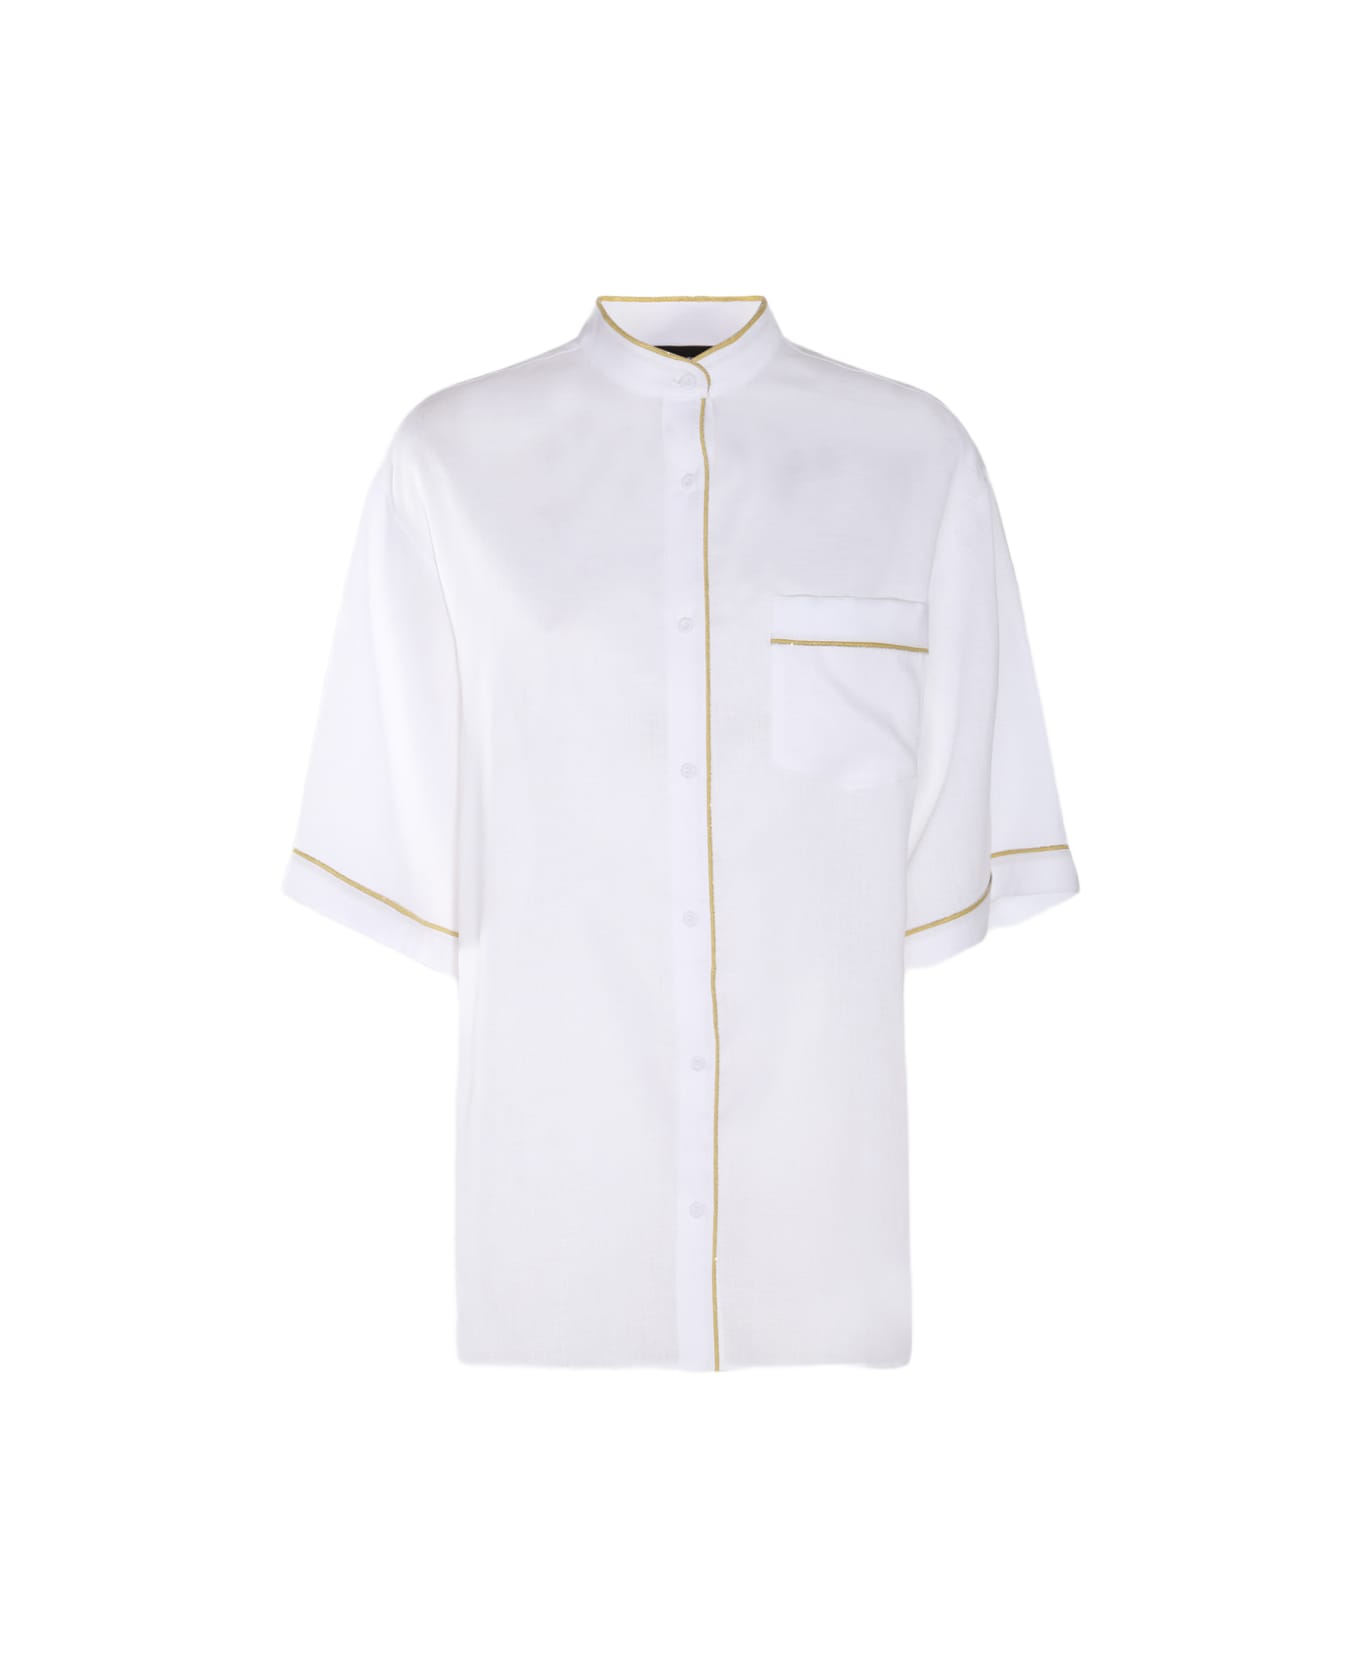 Fabiana Filippi White Cotton Shirt - White シャツ